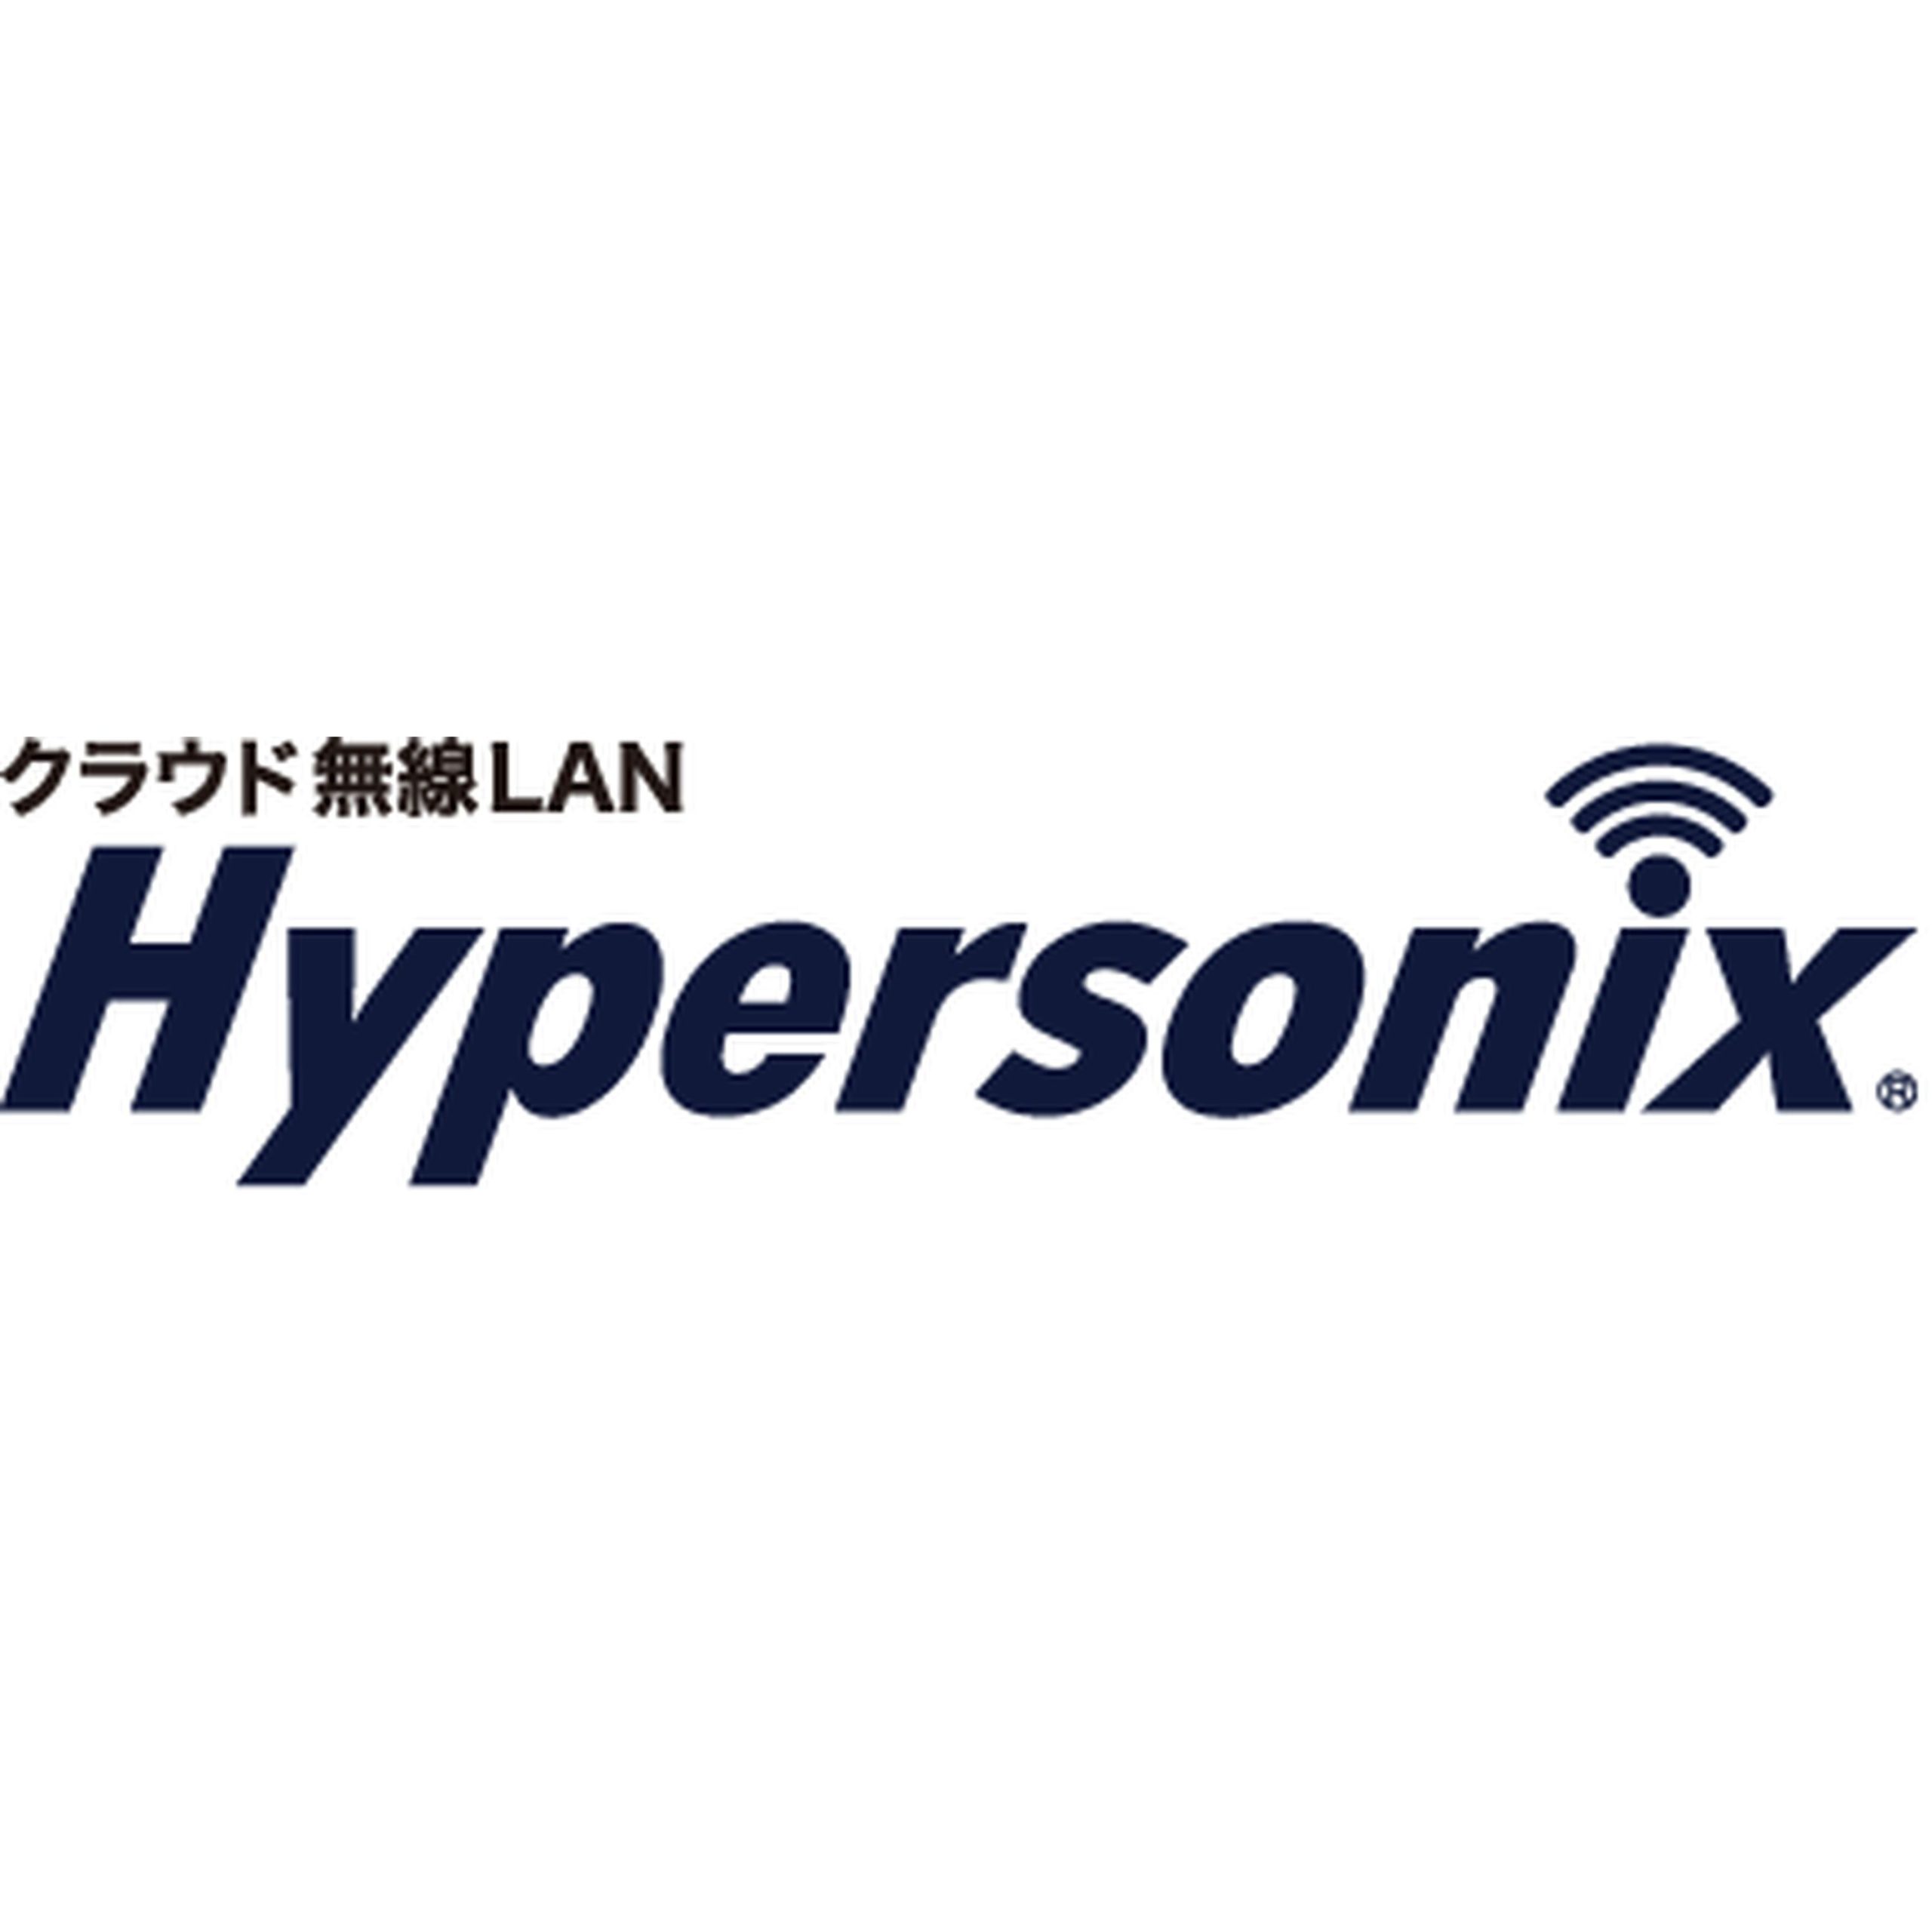 クラウド無線LANサービス Hypersonix